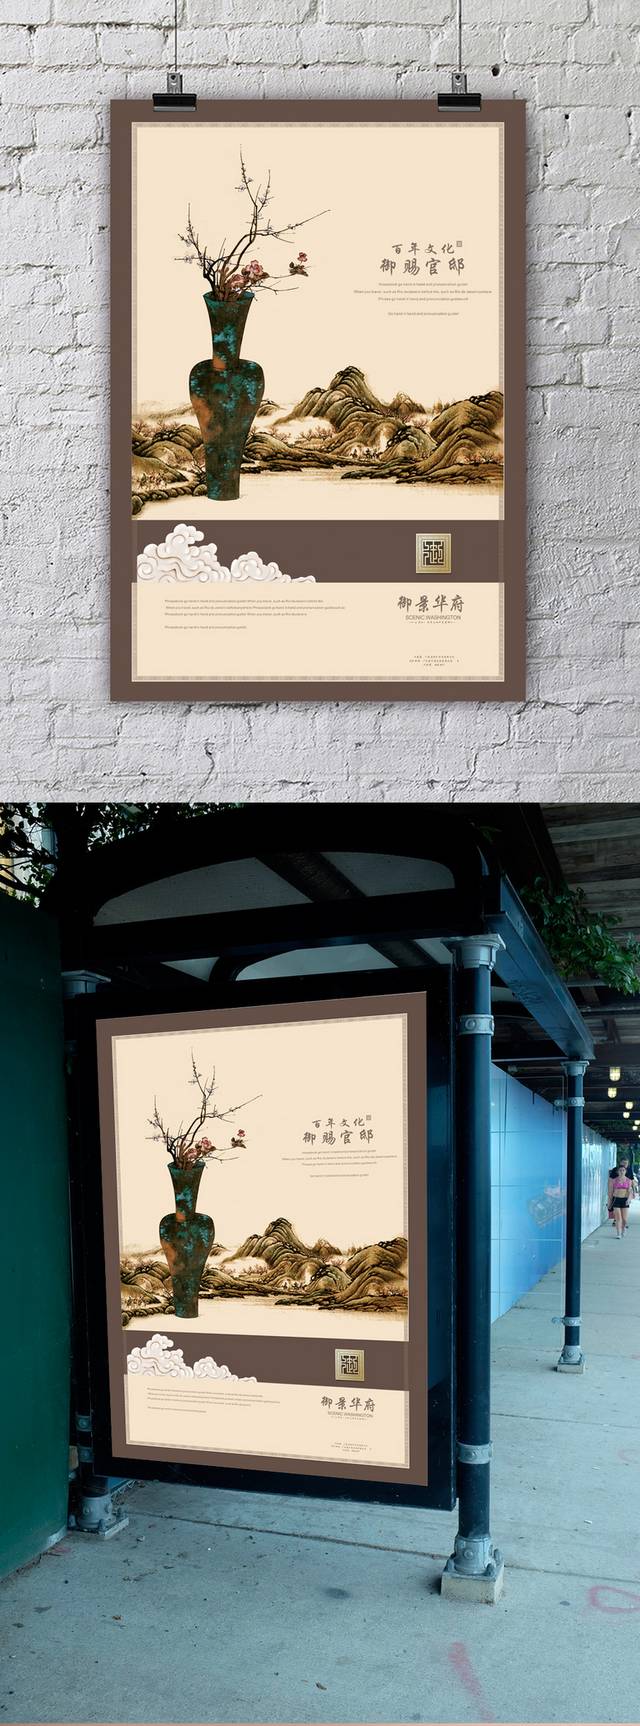 中式房地产广告宣传设计